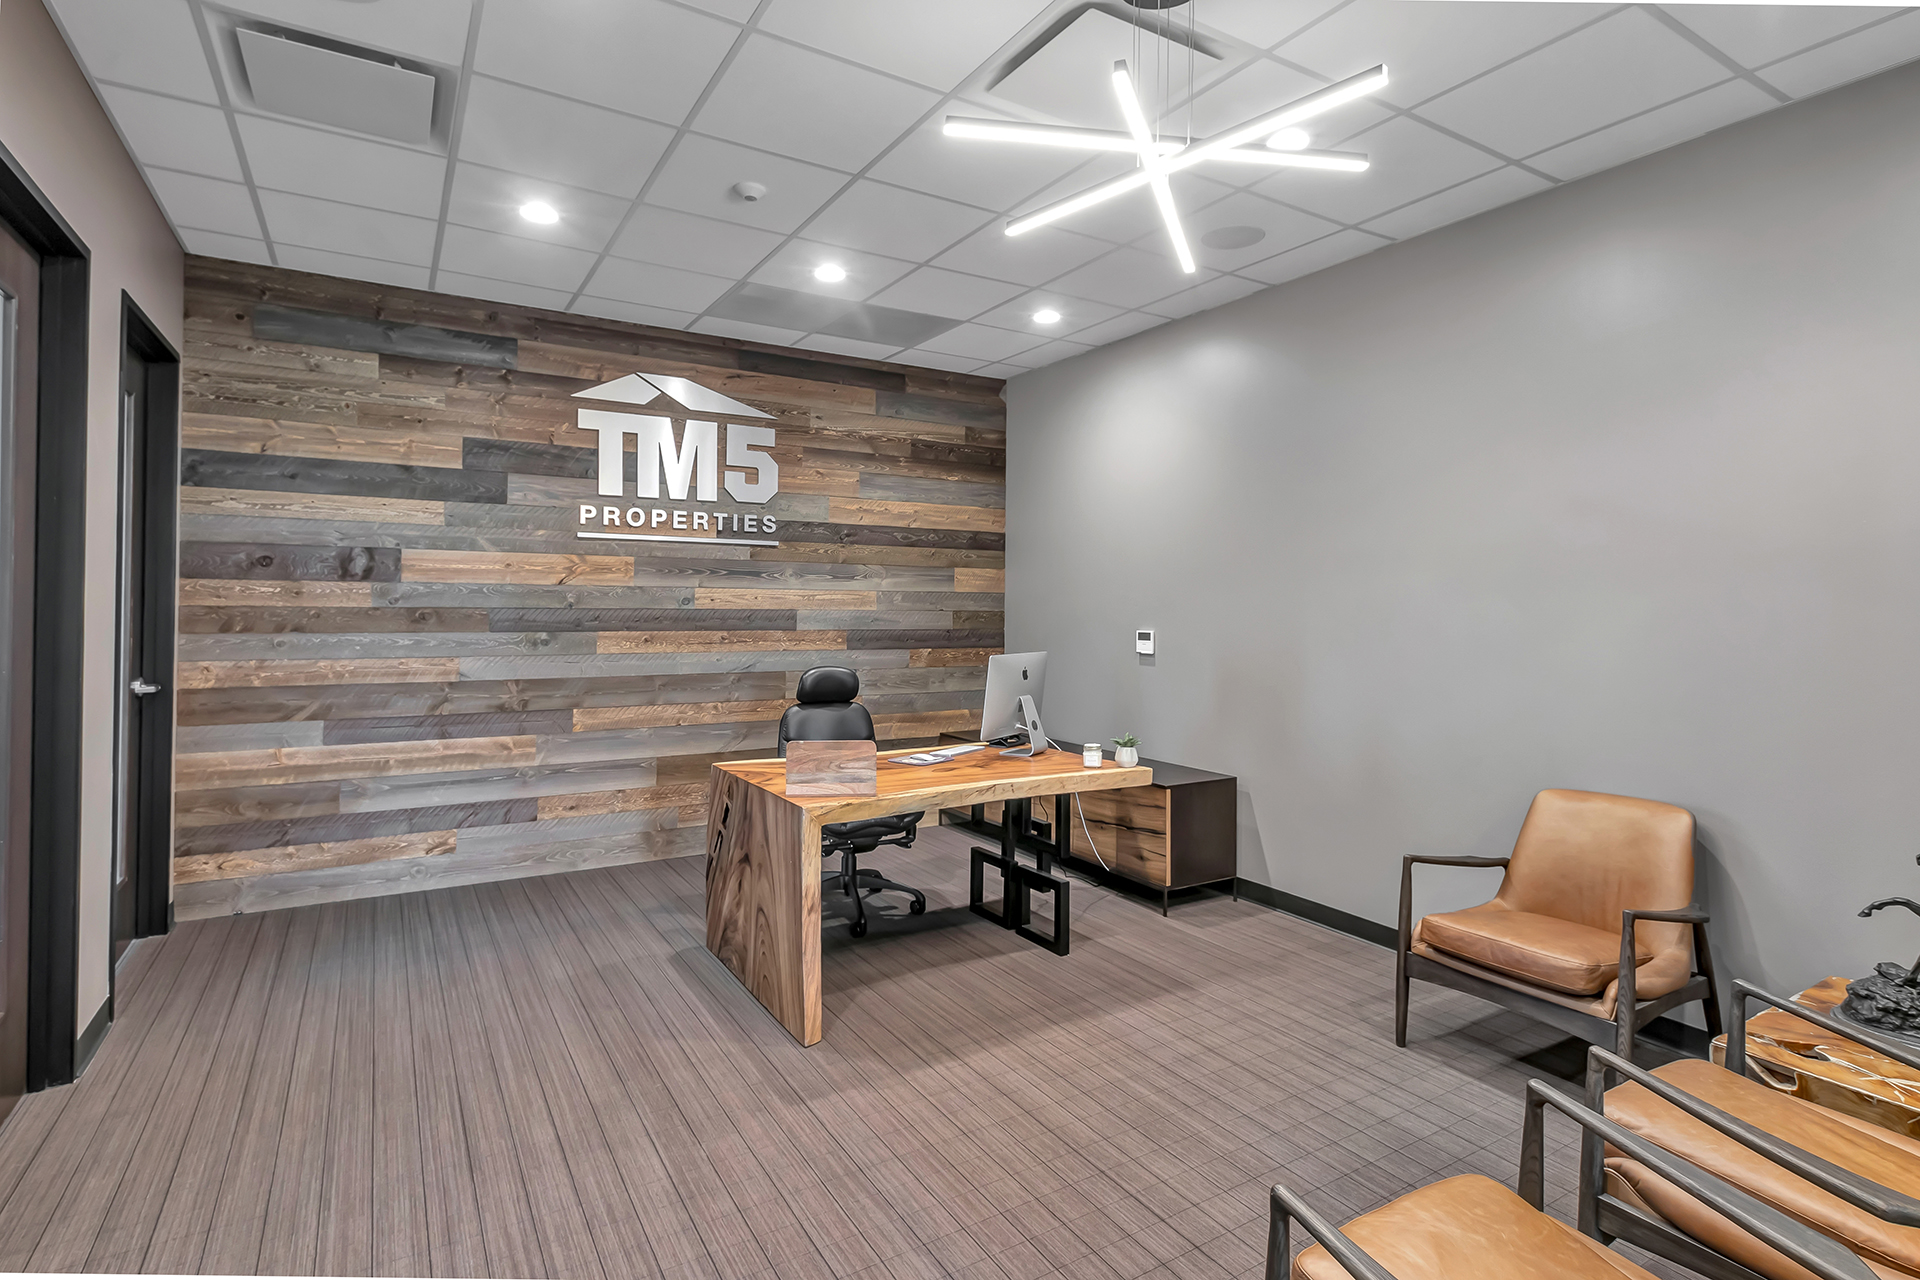 tm5 office interior